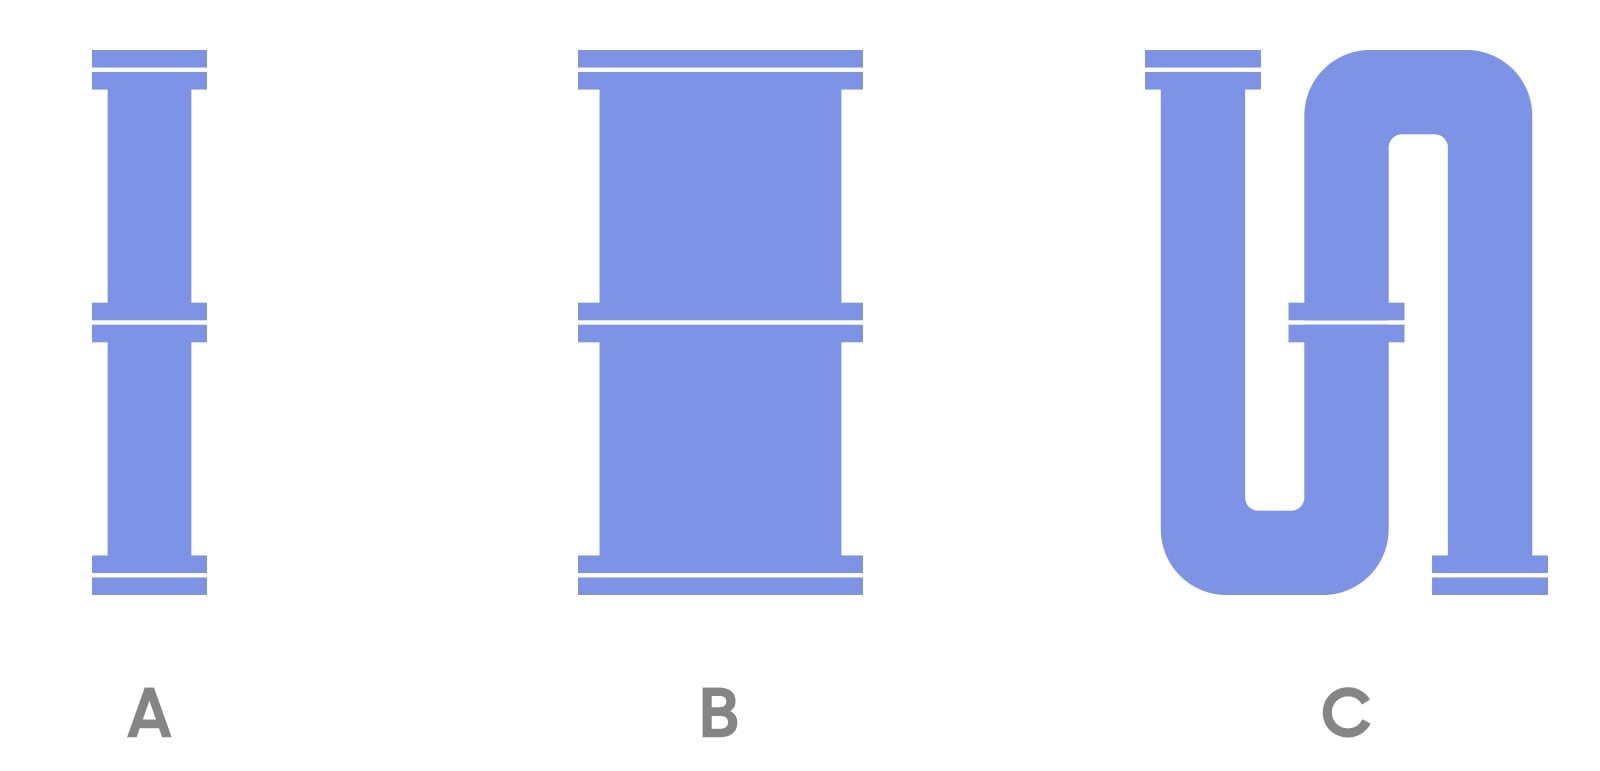 그림[6] 저항을 수로에 비교 (저항은 B가 제일 작고 C가 제일 크다)